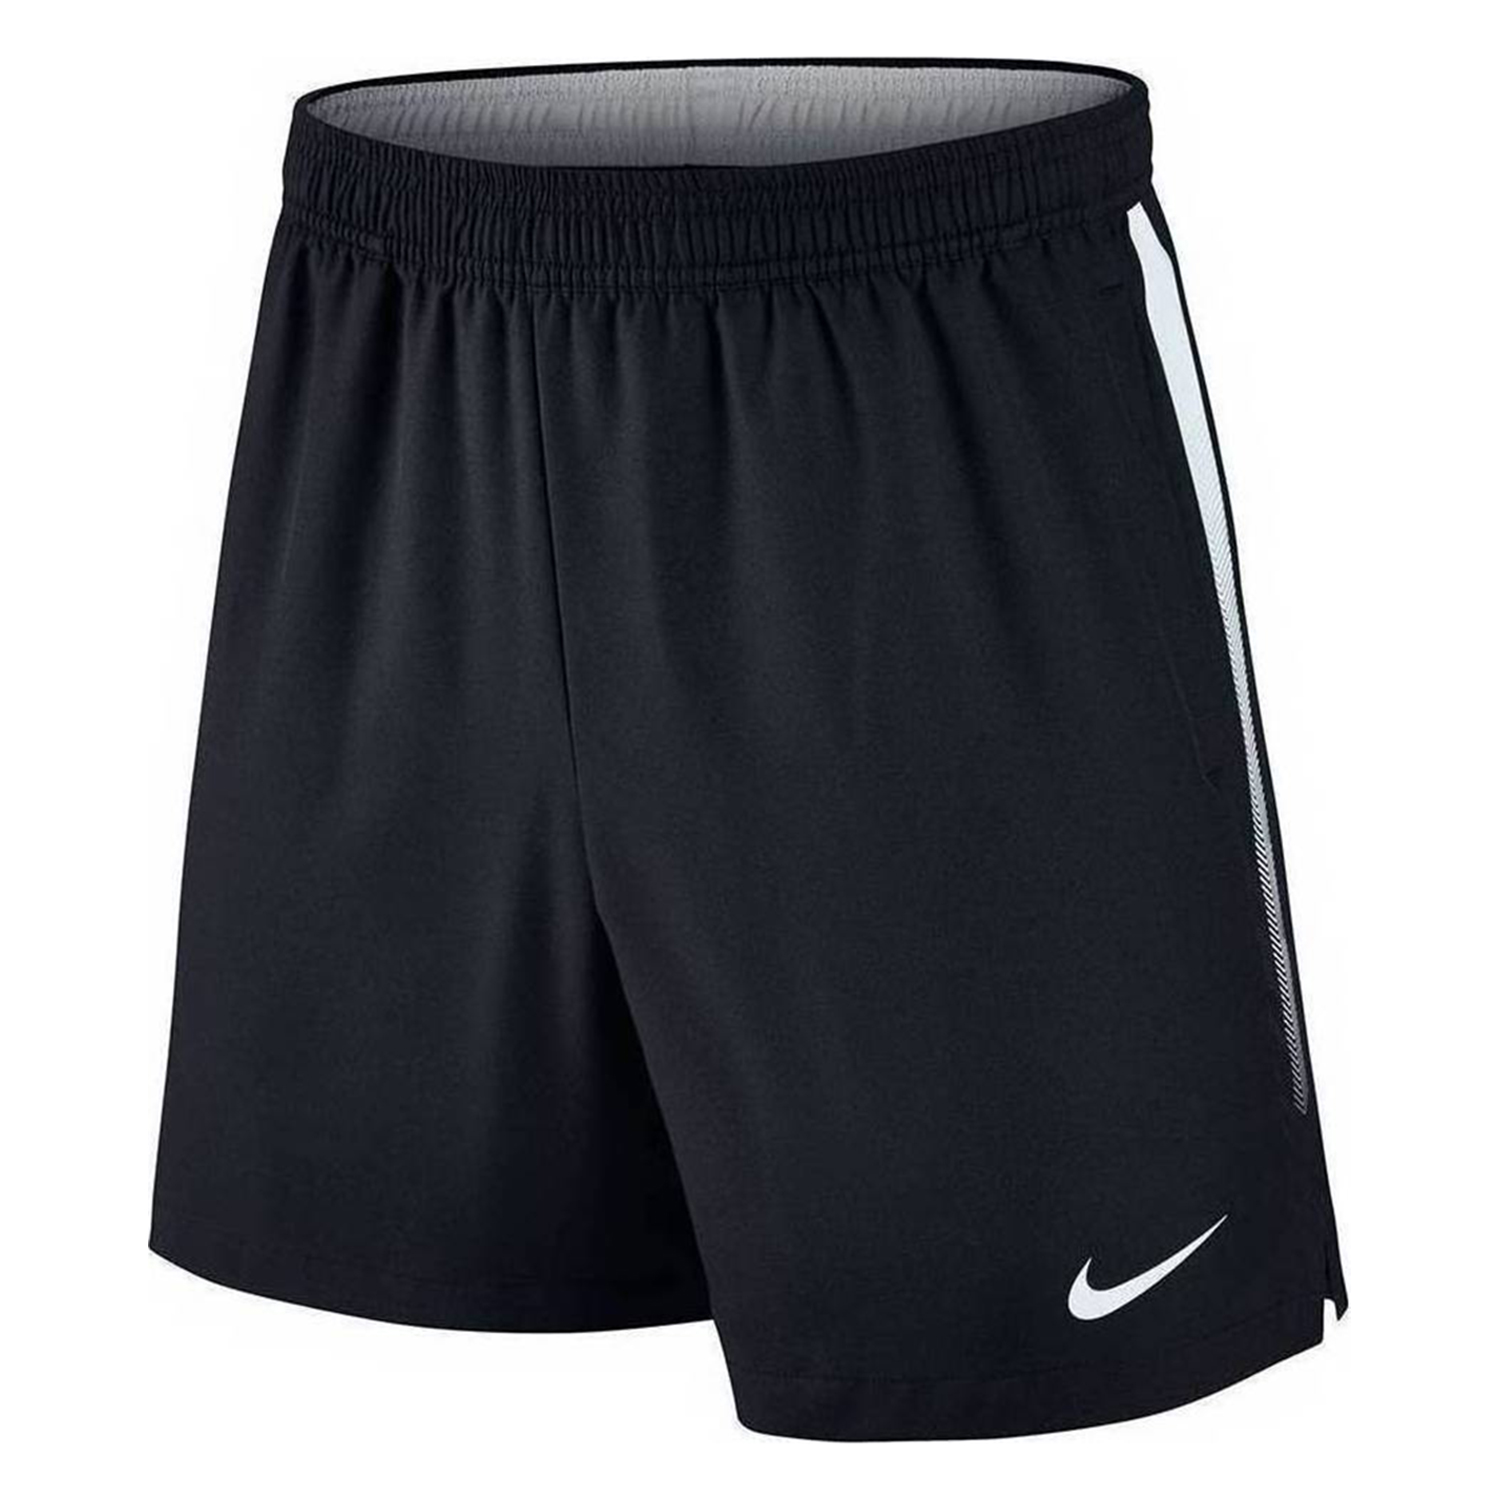 Шорты nike dri. 2 Inch shorts Nike Dri-Fit. Шорты Nike Herren. 2 Inch men shorts Nike Dry Fit. Шорты Nike Dri Fit мужские.